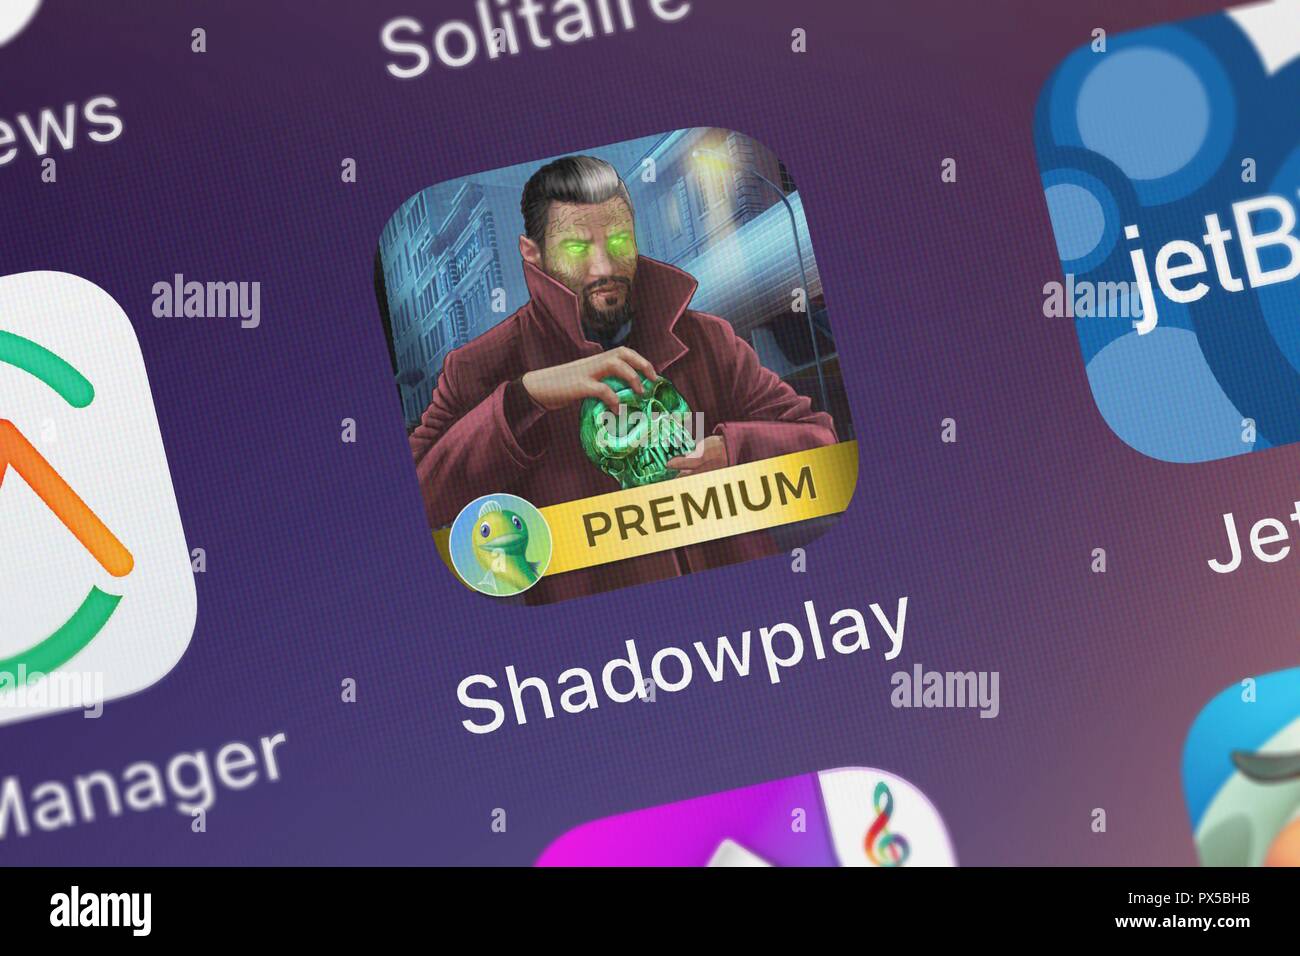 Londres, Royaume-Uni - 19 octobre 2018 : l'icône de l'application mobile Shadowplay : Chuchotements de passé de Big Fish, LLC Premium sur un iPhone. Banque D'Images